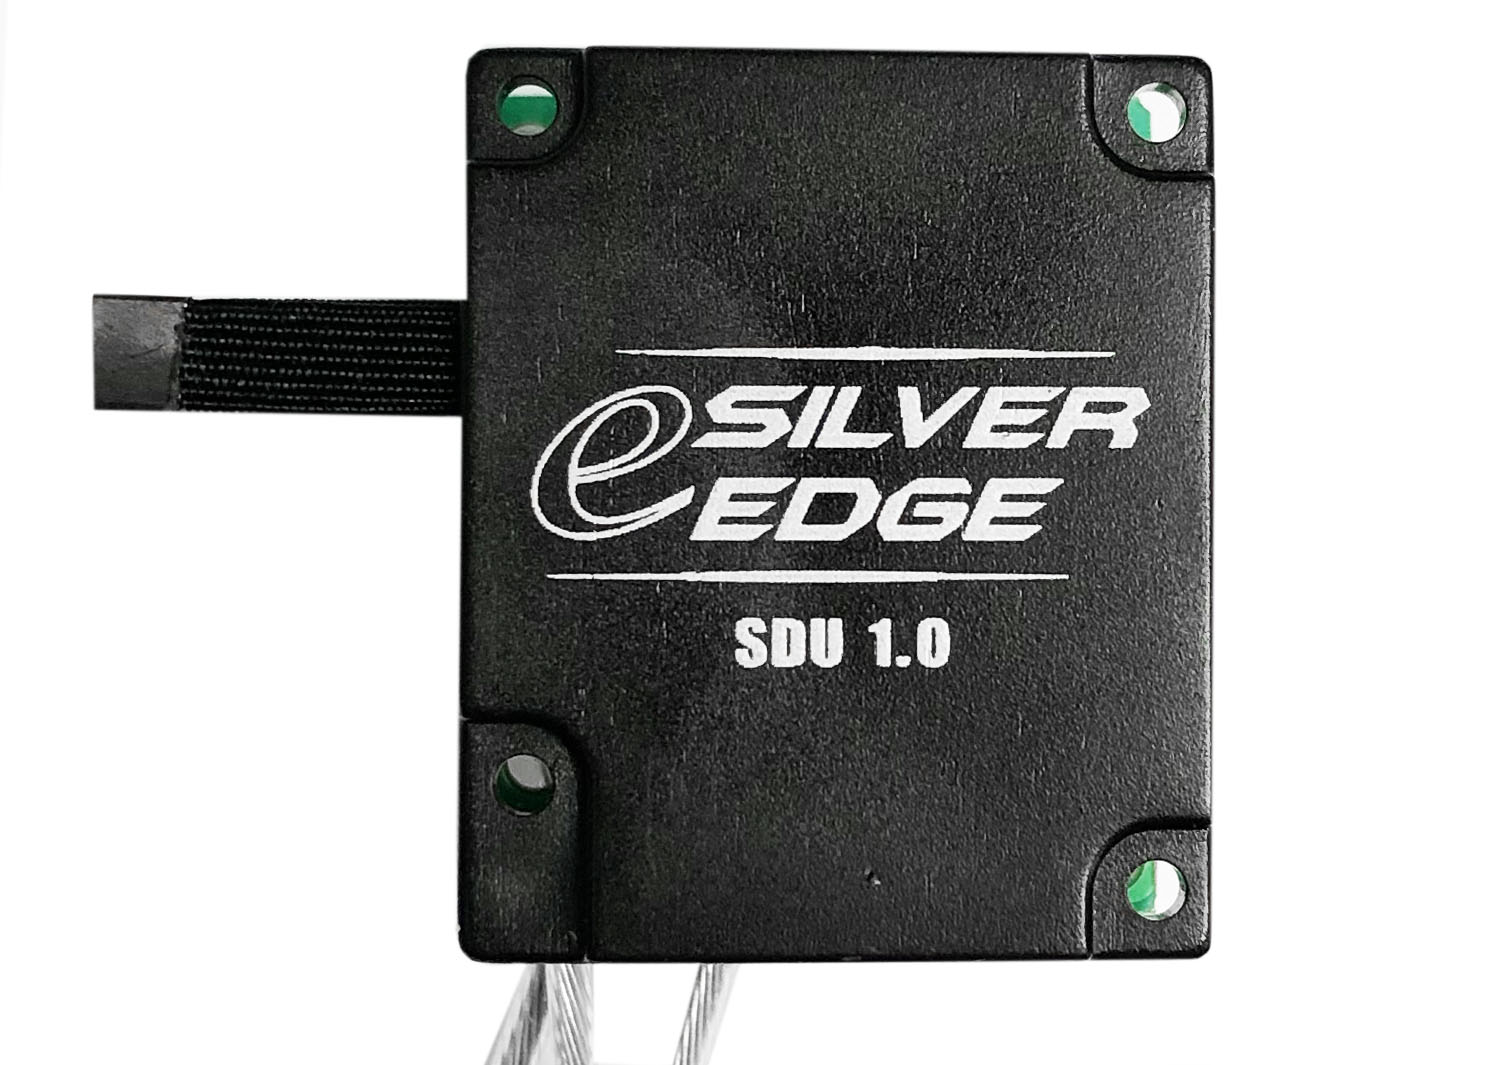 eSilver Edge Gear Box